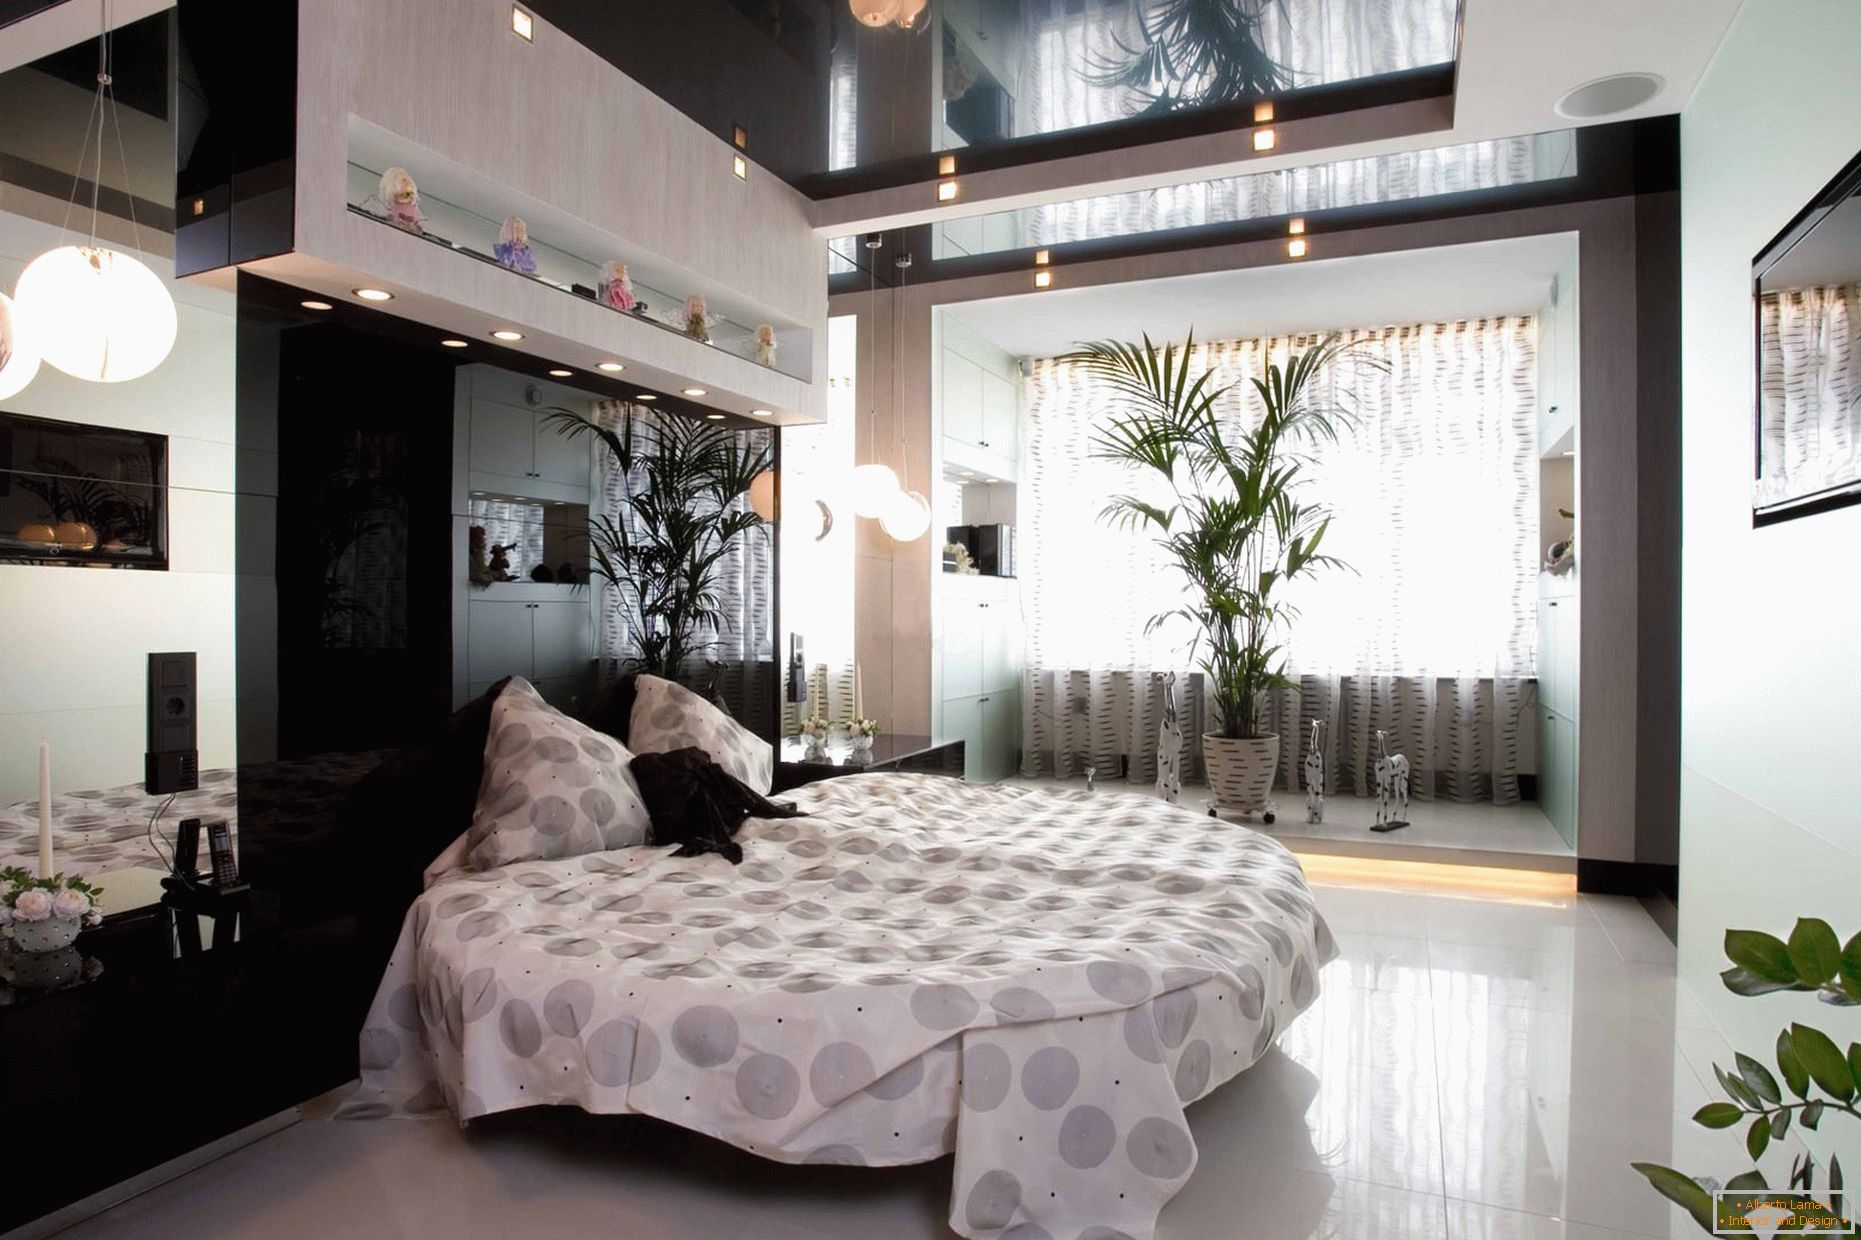 Stretchdecke schwarz im modernen Schlafzimmer